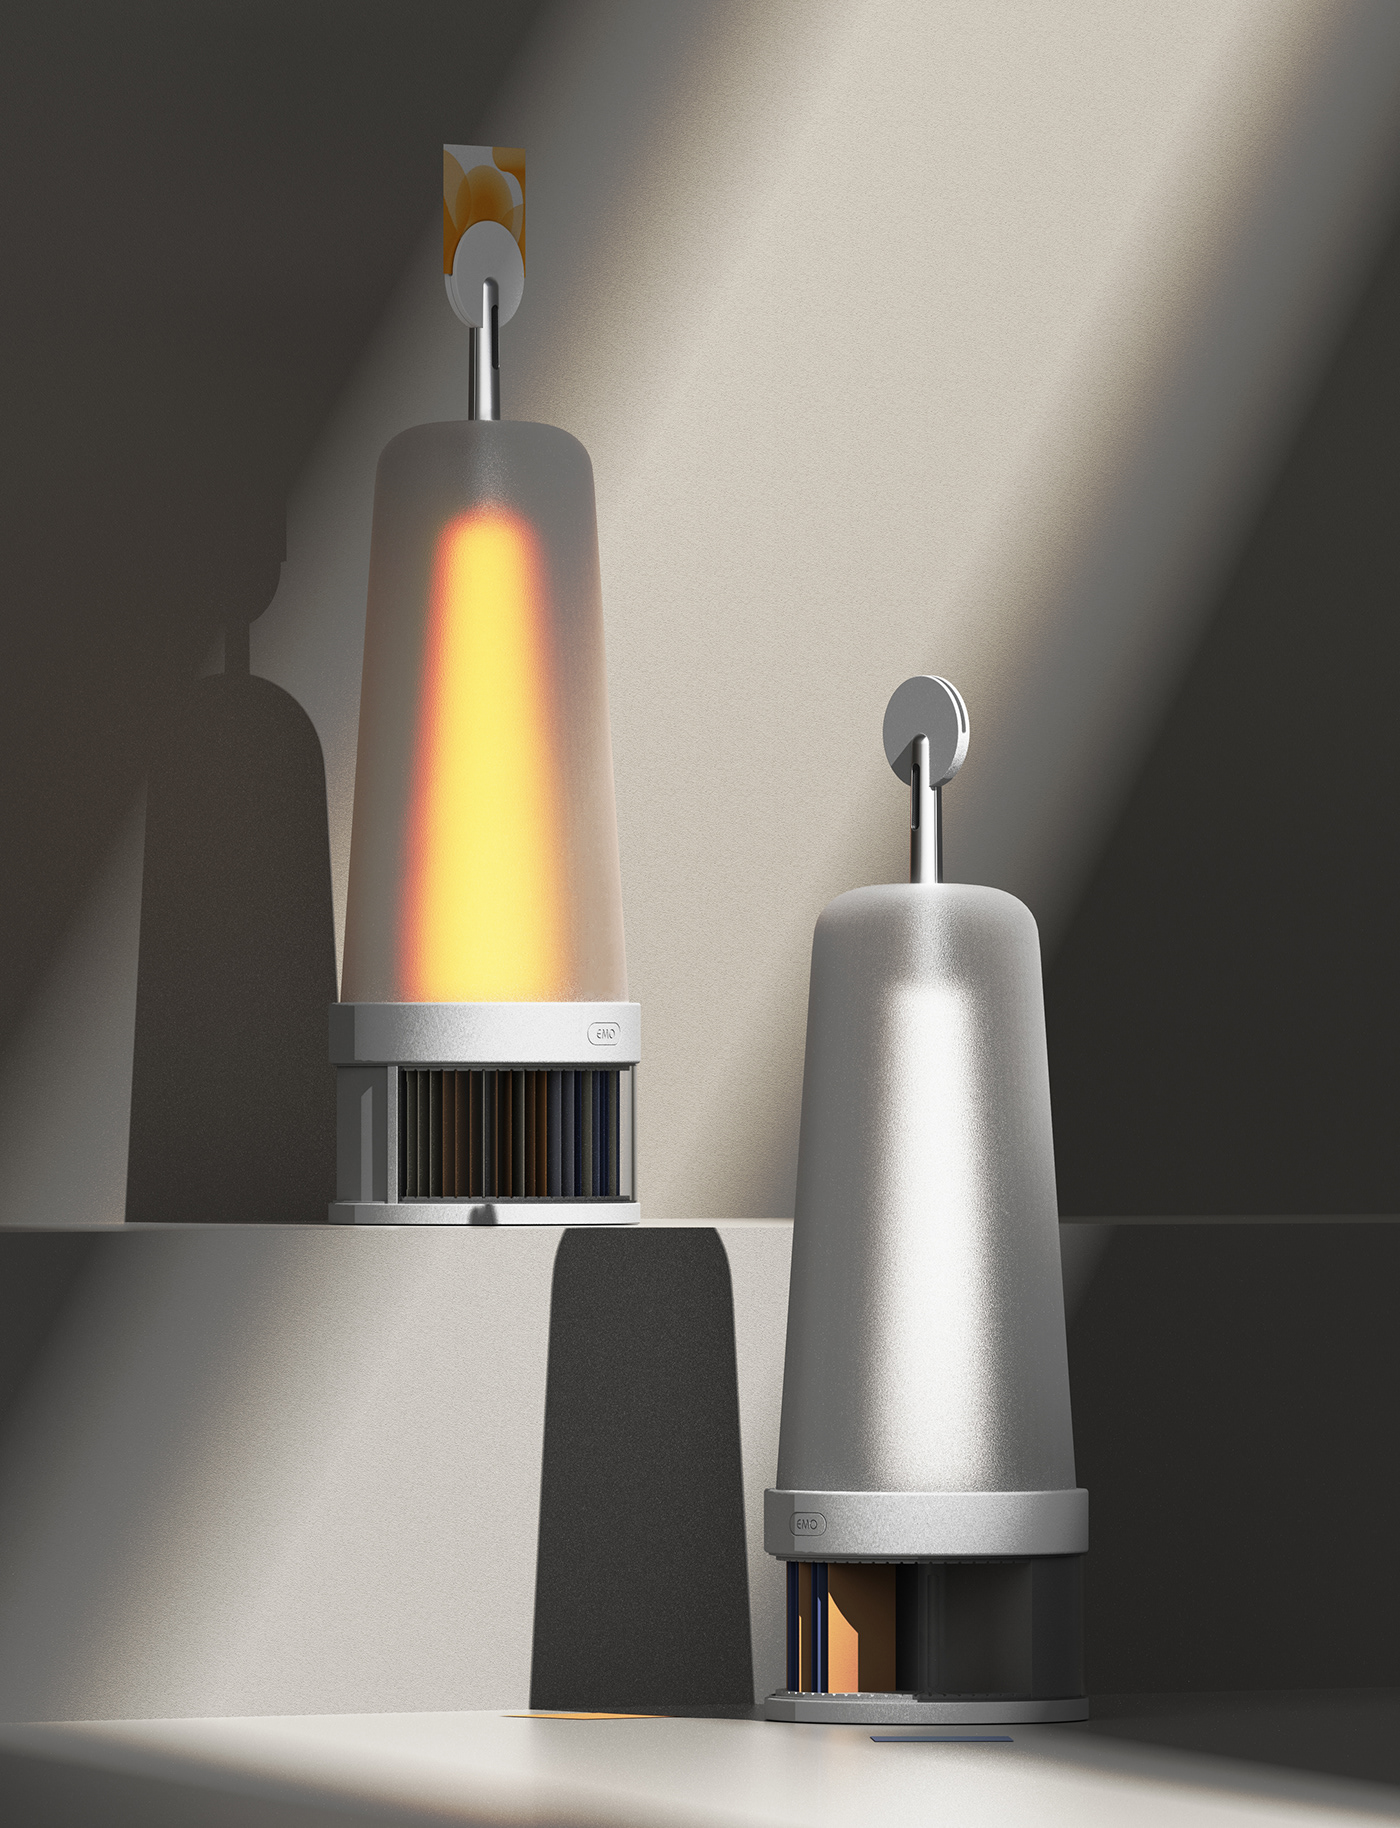 design industrial design  graphic design  branding  product design  industrial product Lamp lamp design light